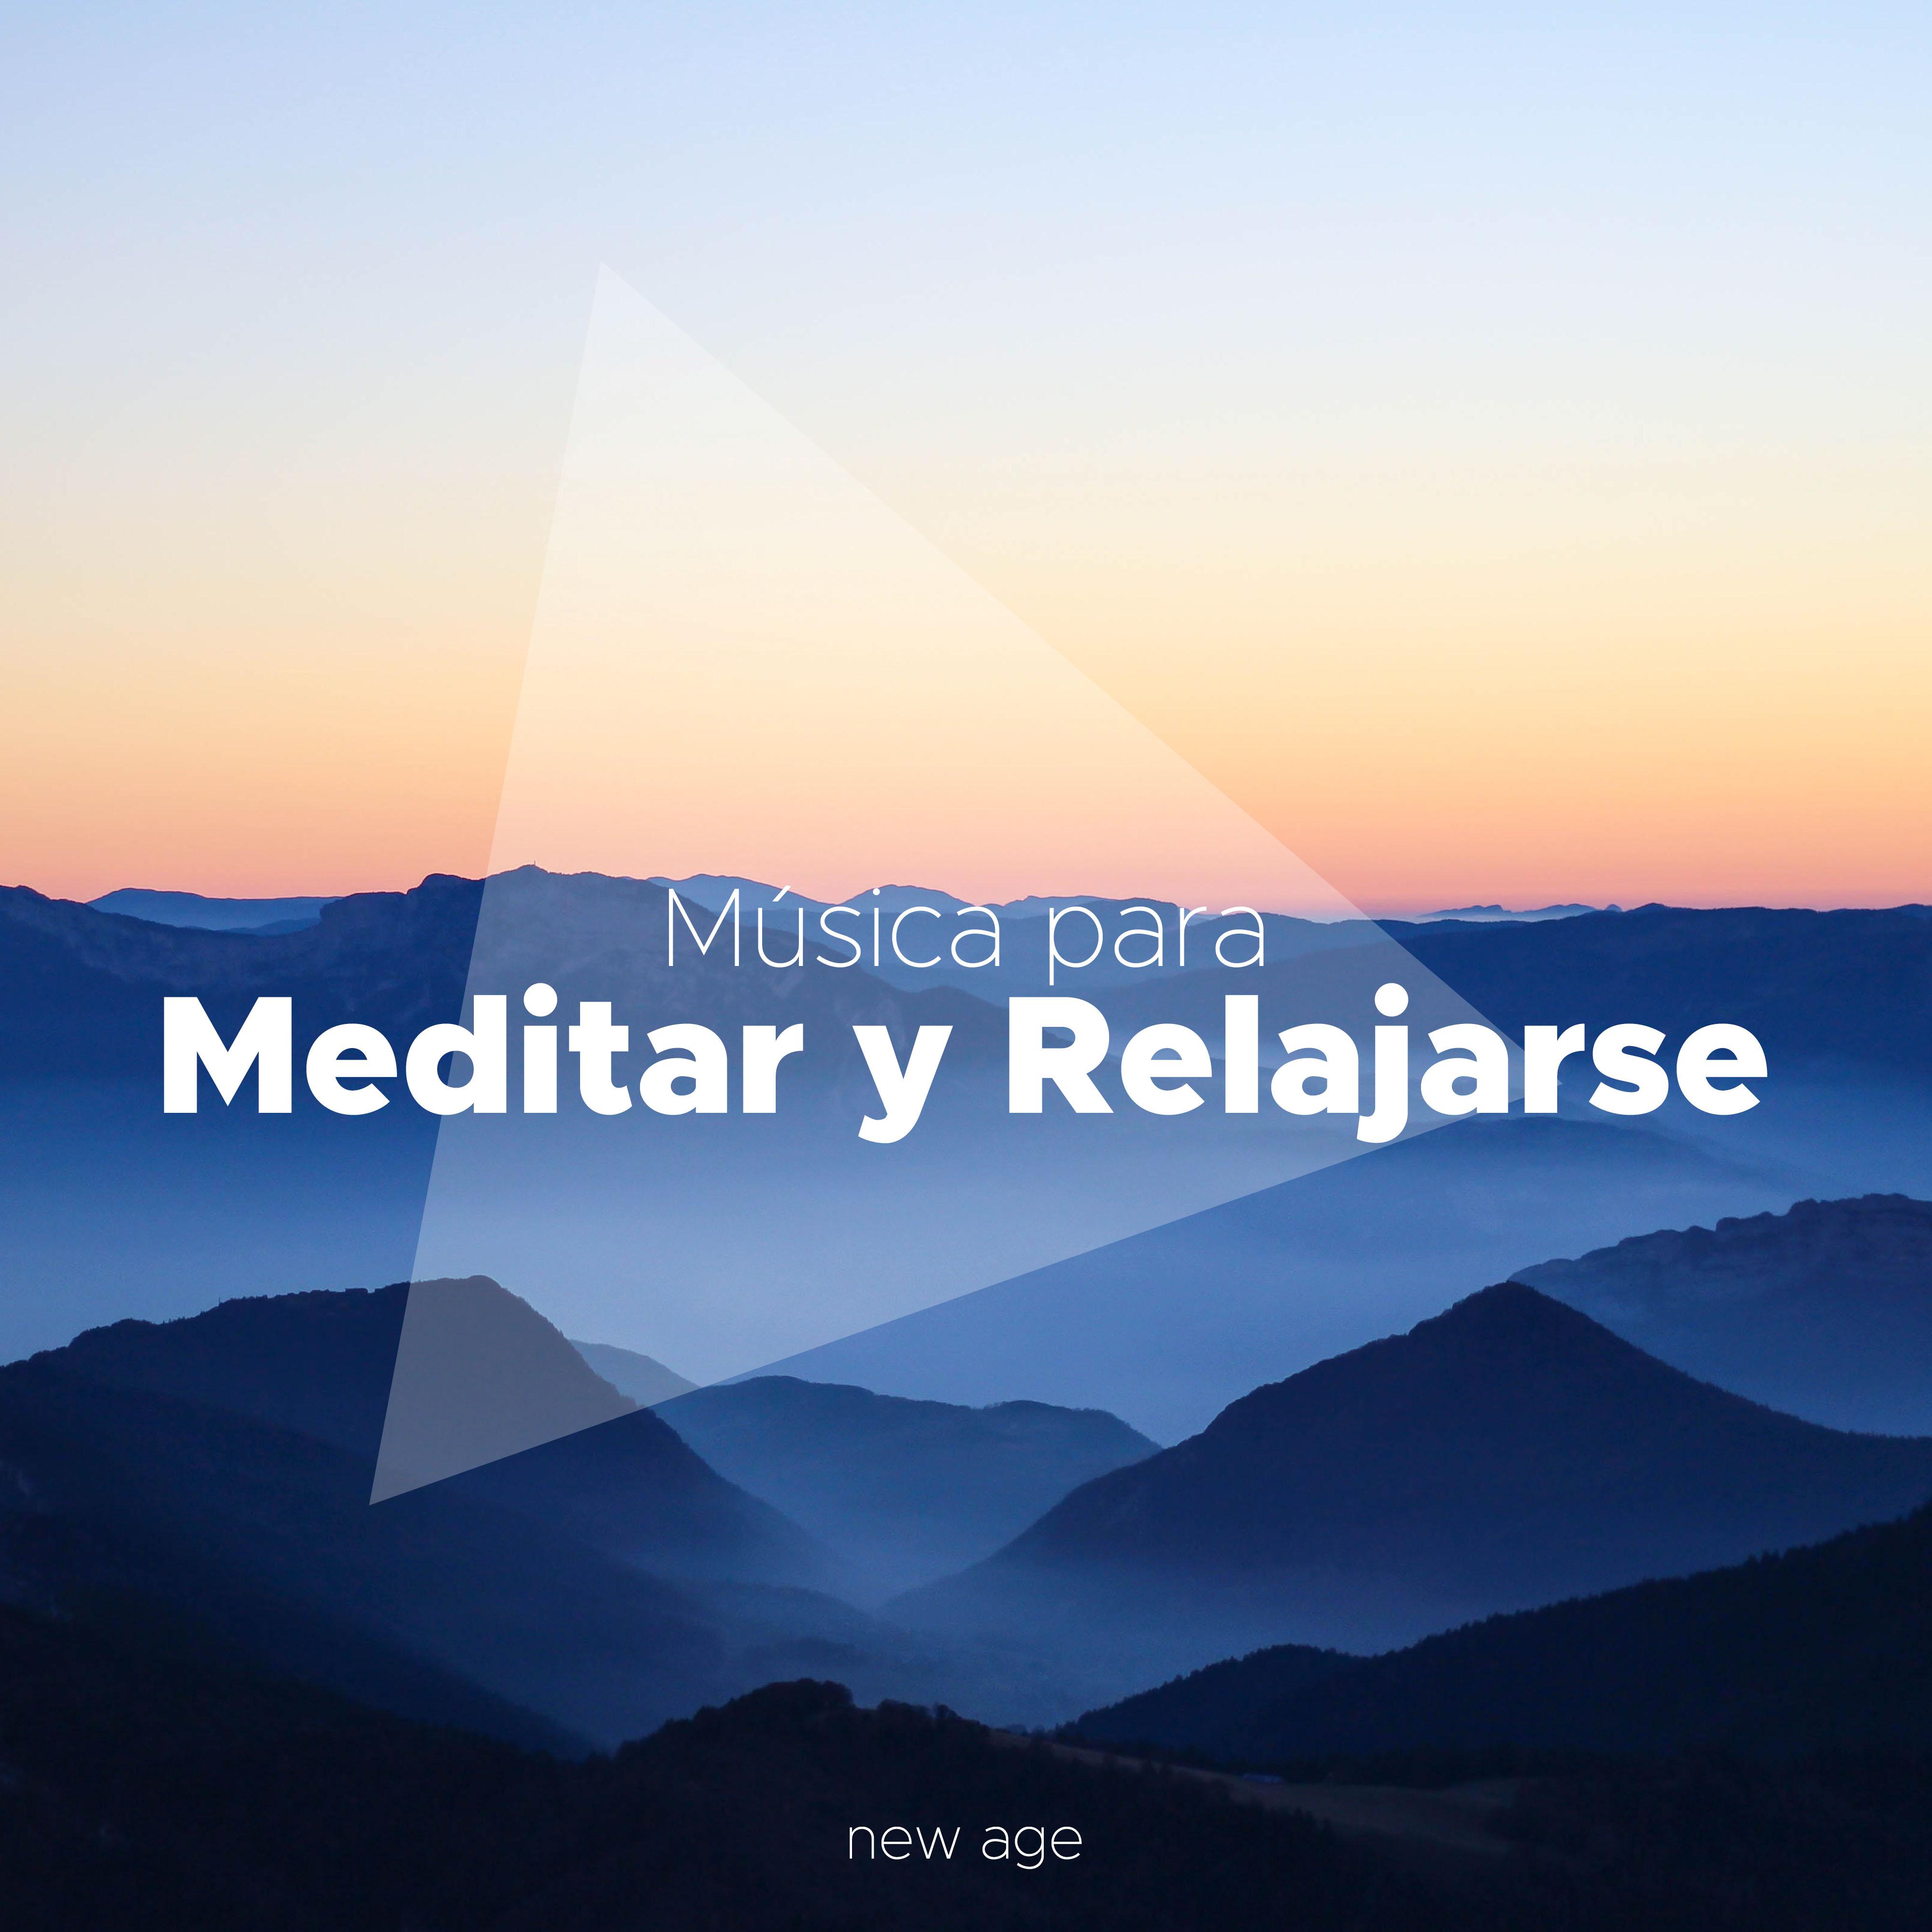 Musica para Meditar y Relajarse